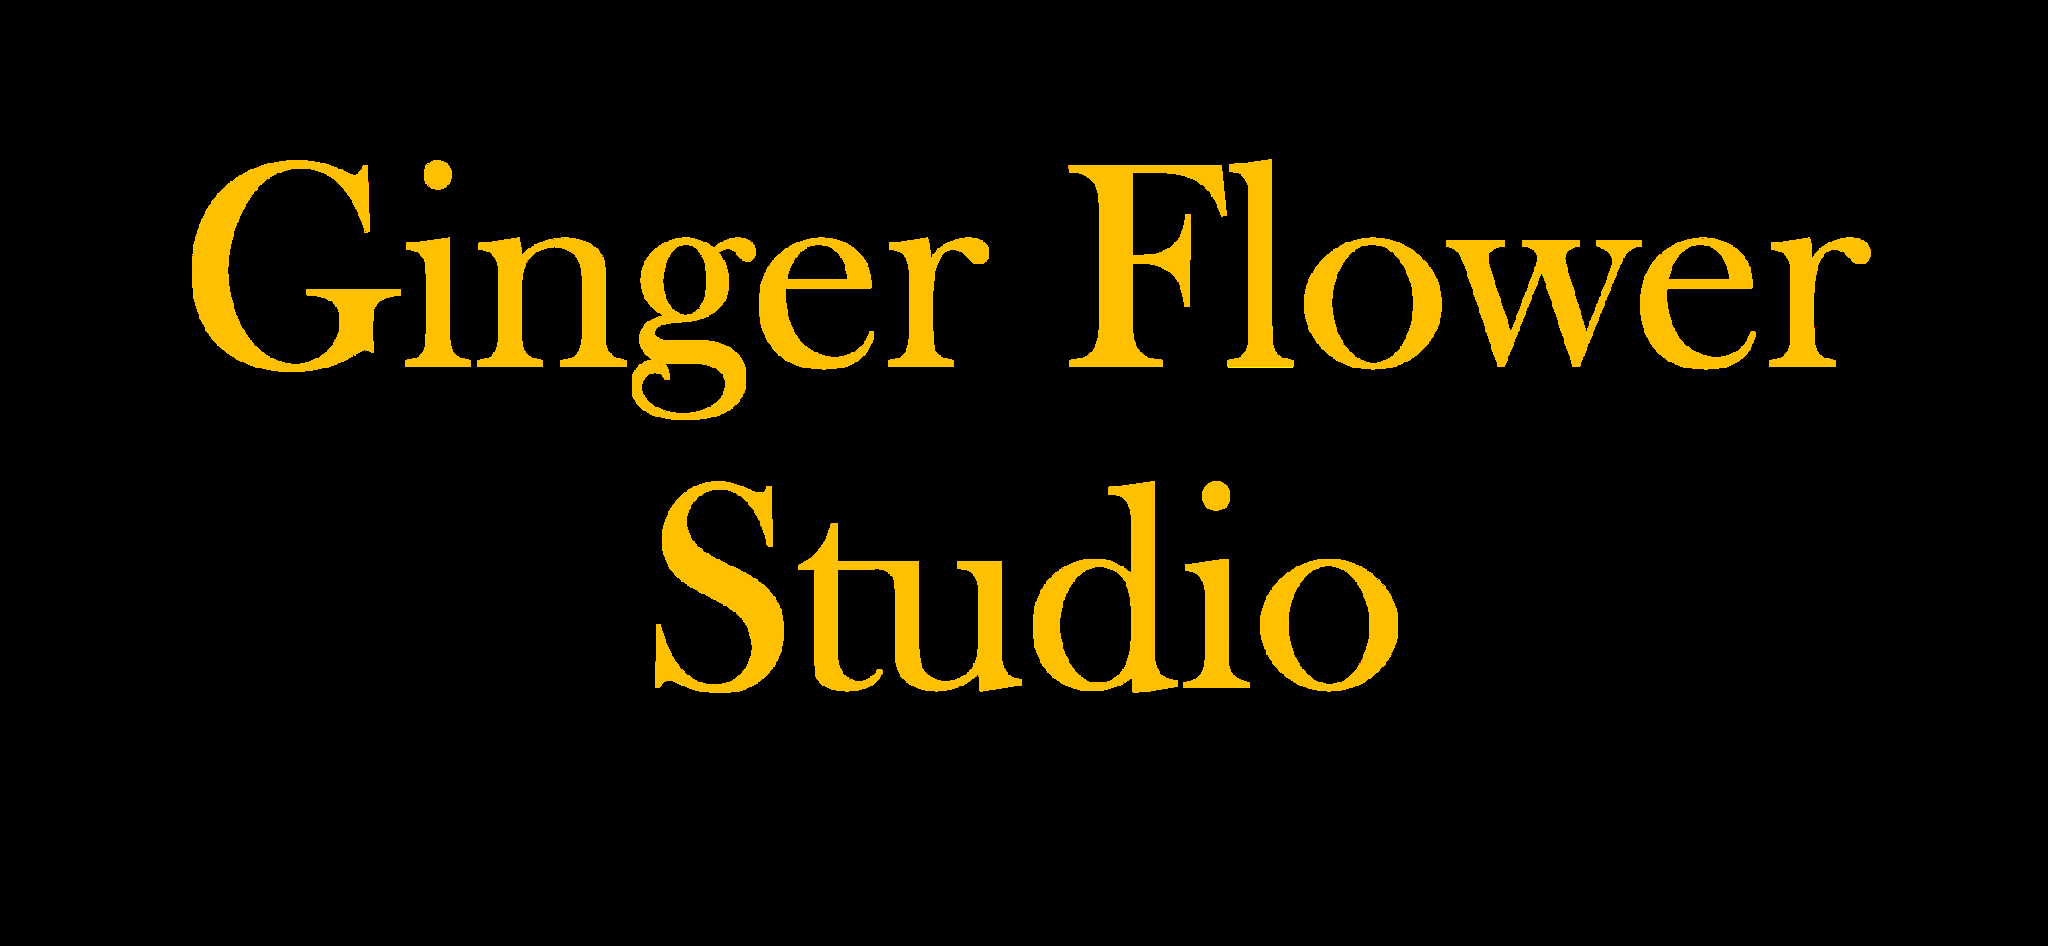 Ginger Flower Studio - Florists & Flower Shops